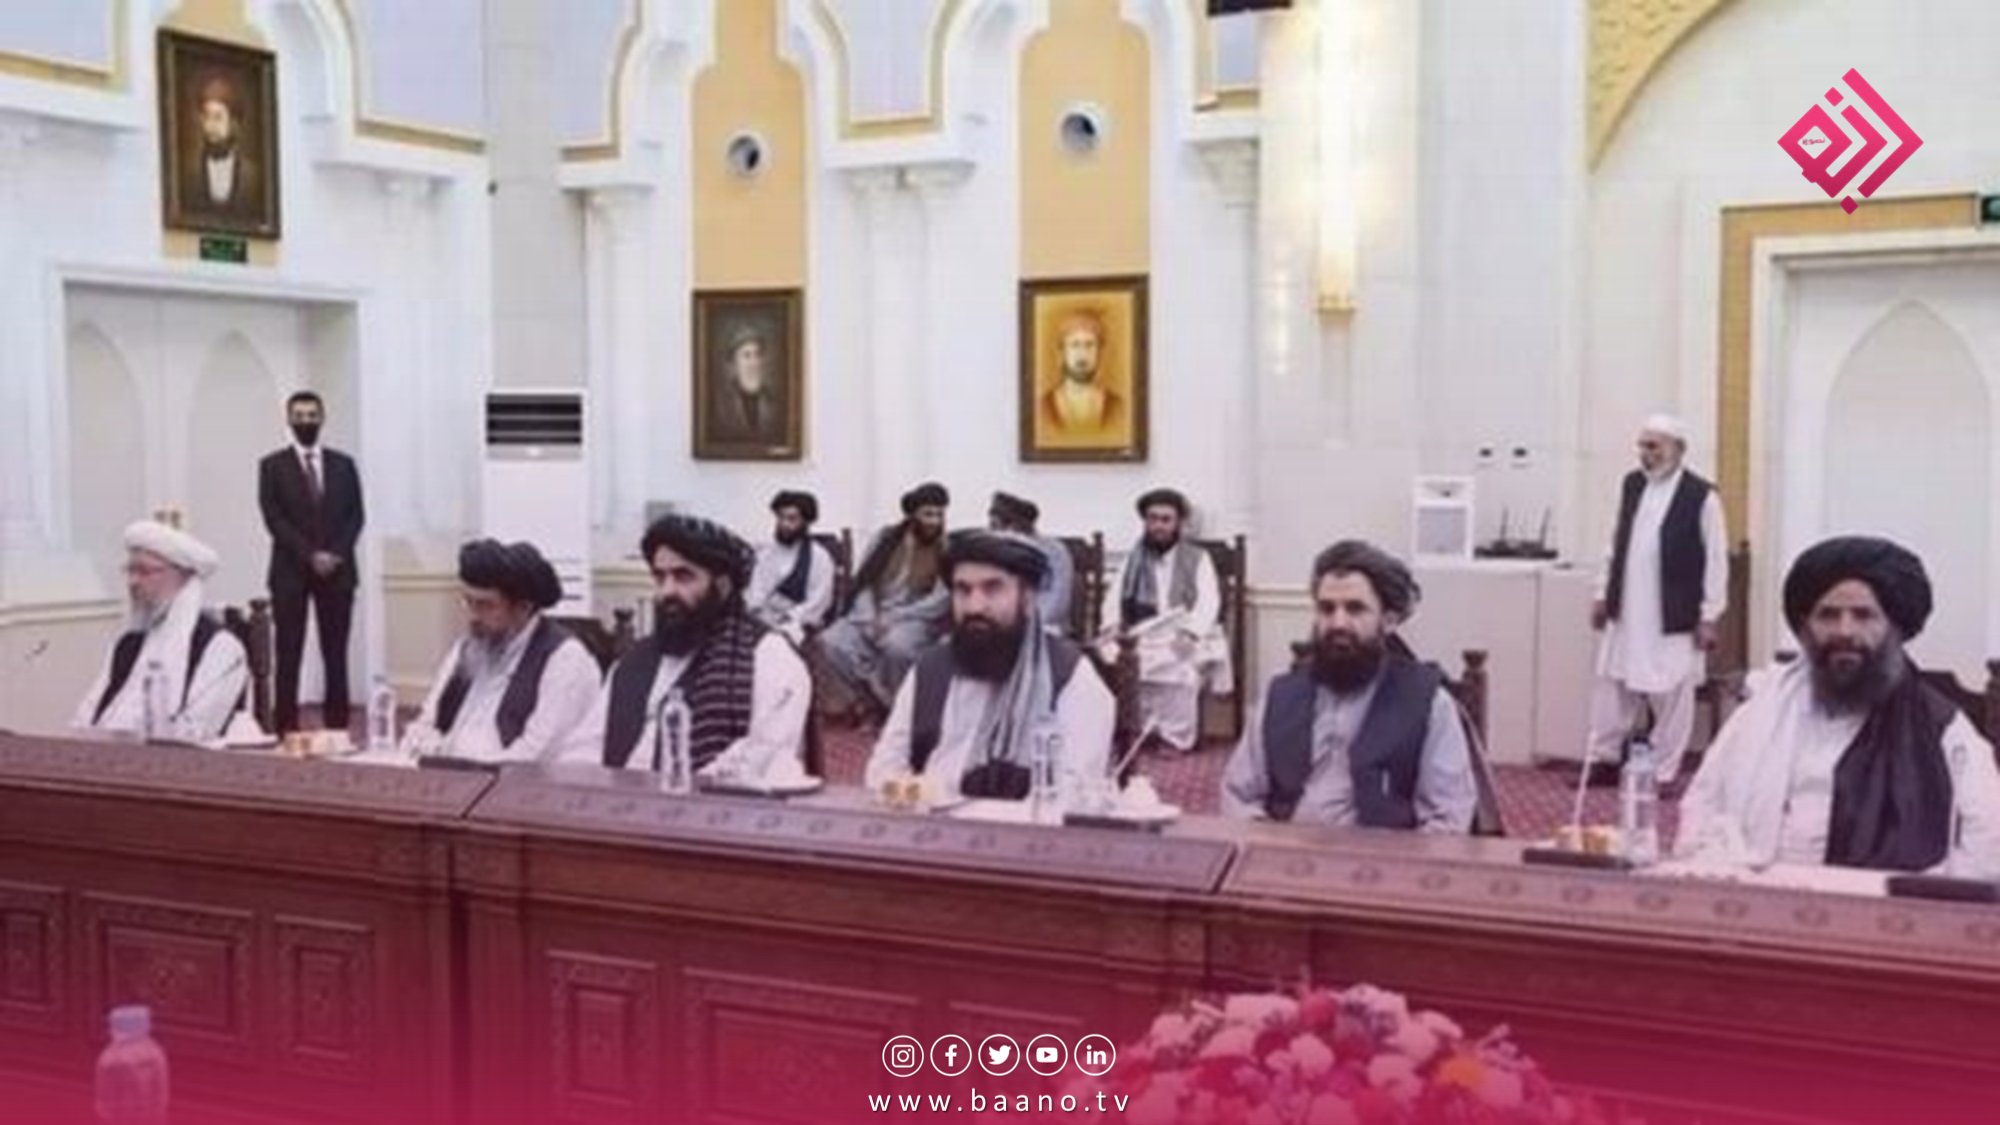 رهبر طالبان در فرمانی به ادارات نظامی و غیرنظامی دولتی دستور داده که از این به بعد سهم تقاعدی را از حقوق ماهوار کارمندان کسر نکنند